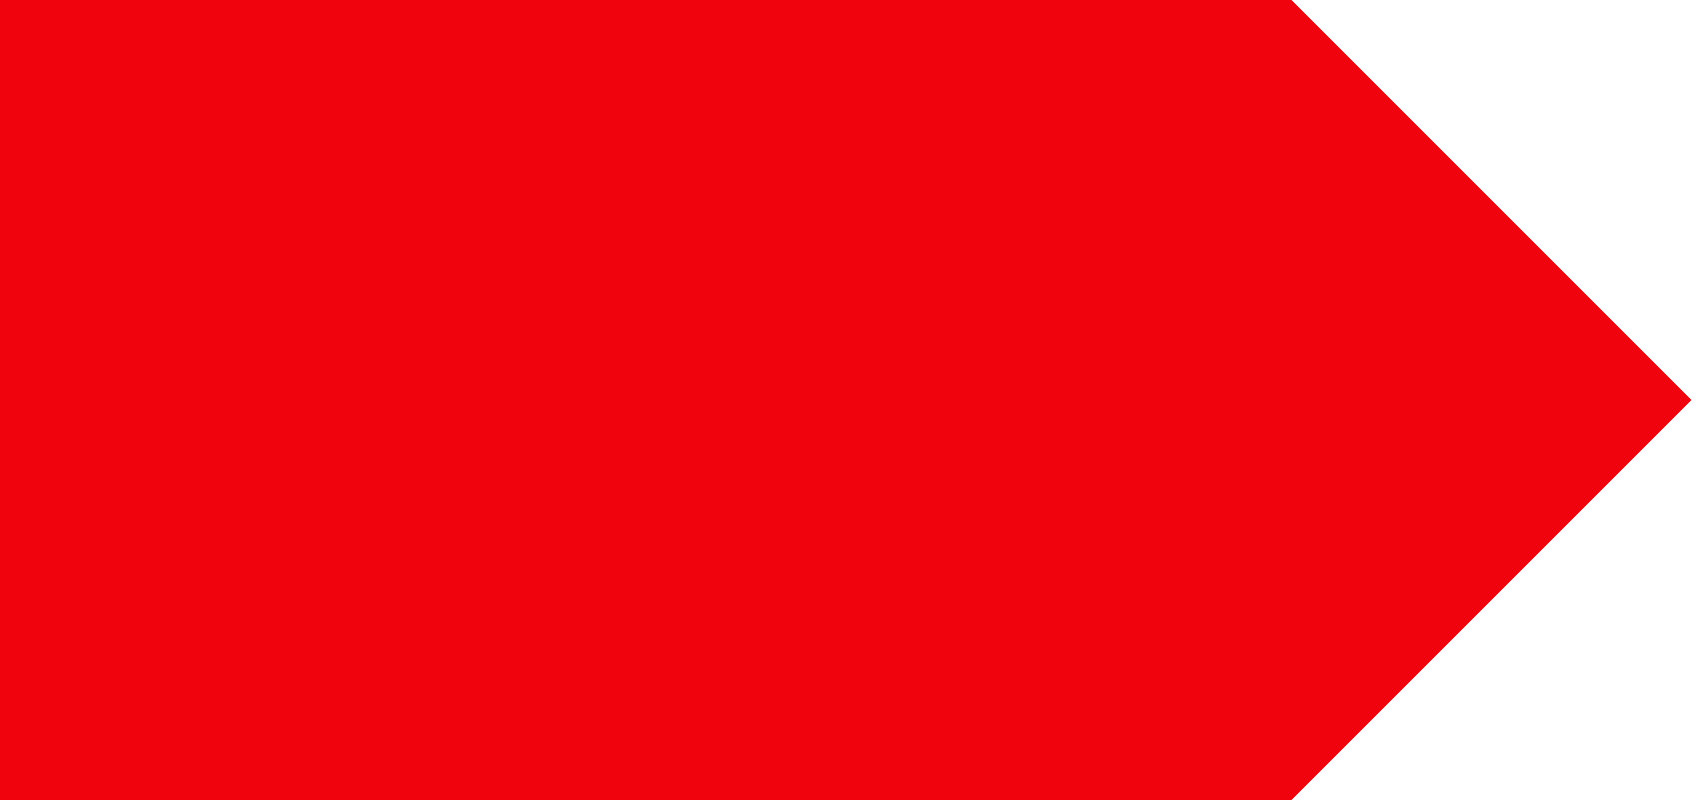 Большая красная линия. Красная полоса. Красный прямоугольник на белом фоне. Красная плашка. Красный фон для фотошопа.